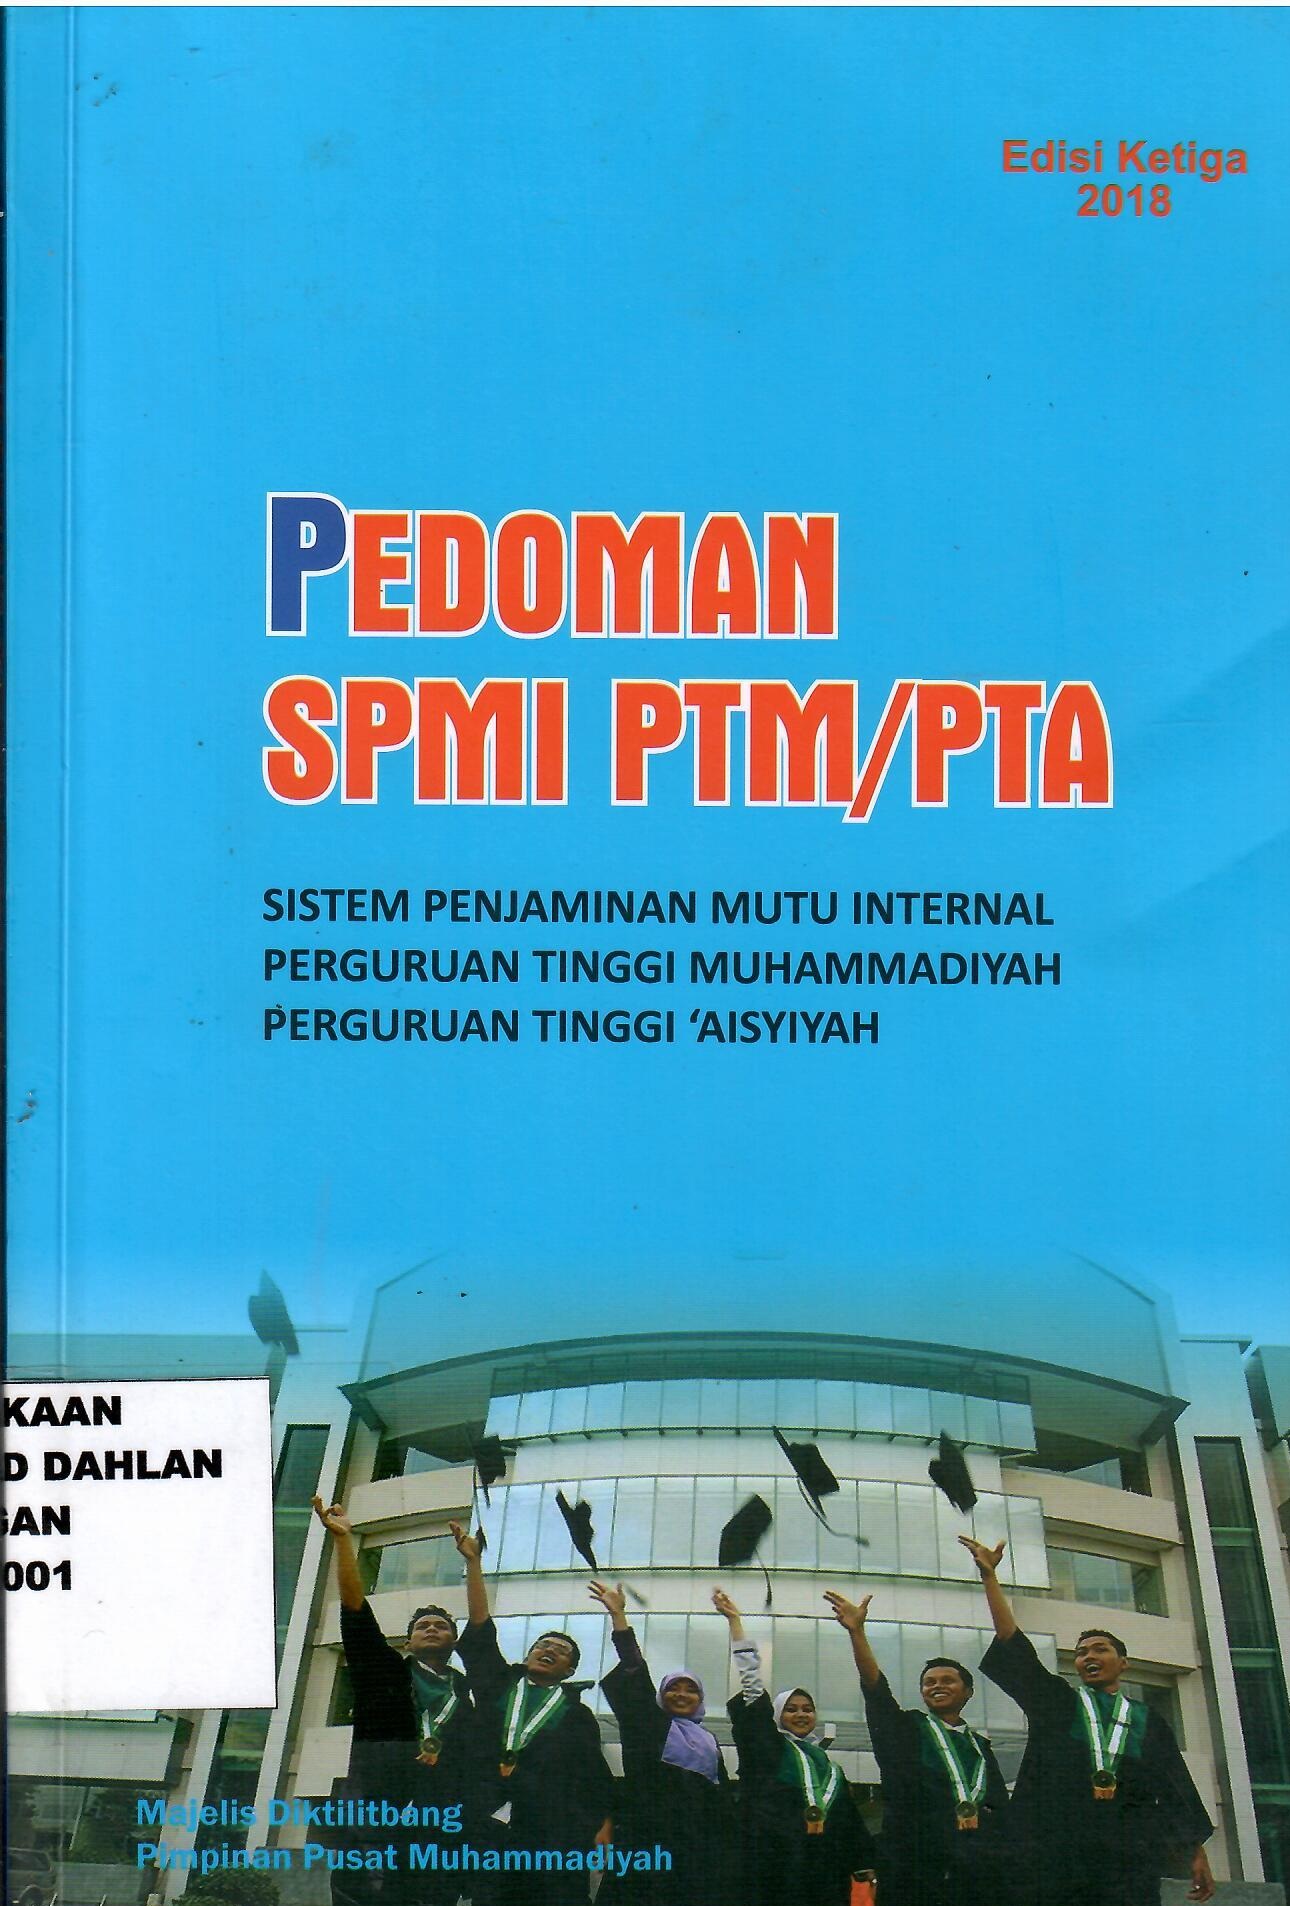 Pedoman SPMI PTM / PTA : Sistem Penjaminan Mutu Internal Perguruan Tinggi Muhammadiyah Perguruan Tinggi Aisyiyah